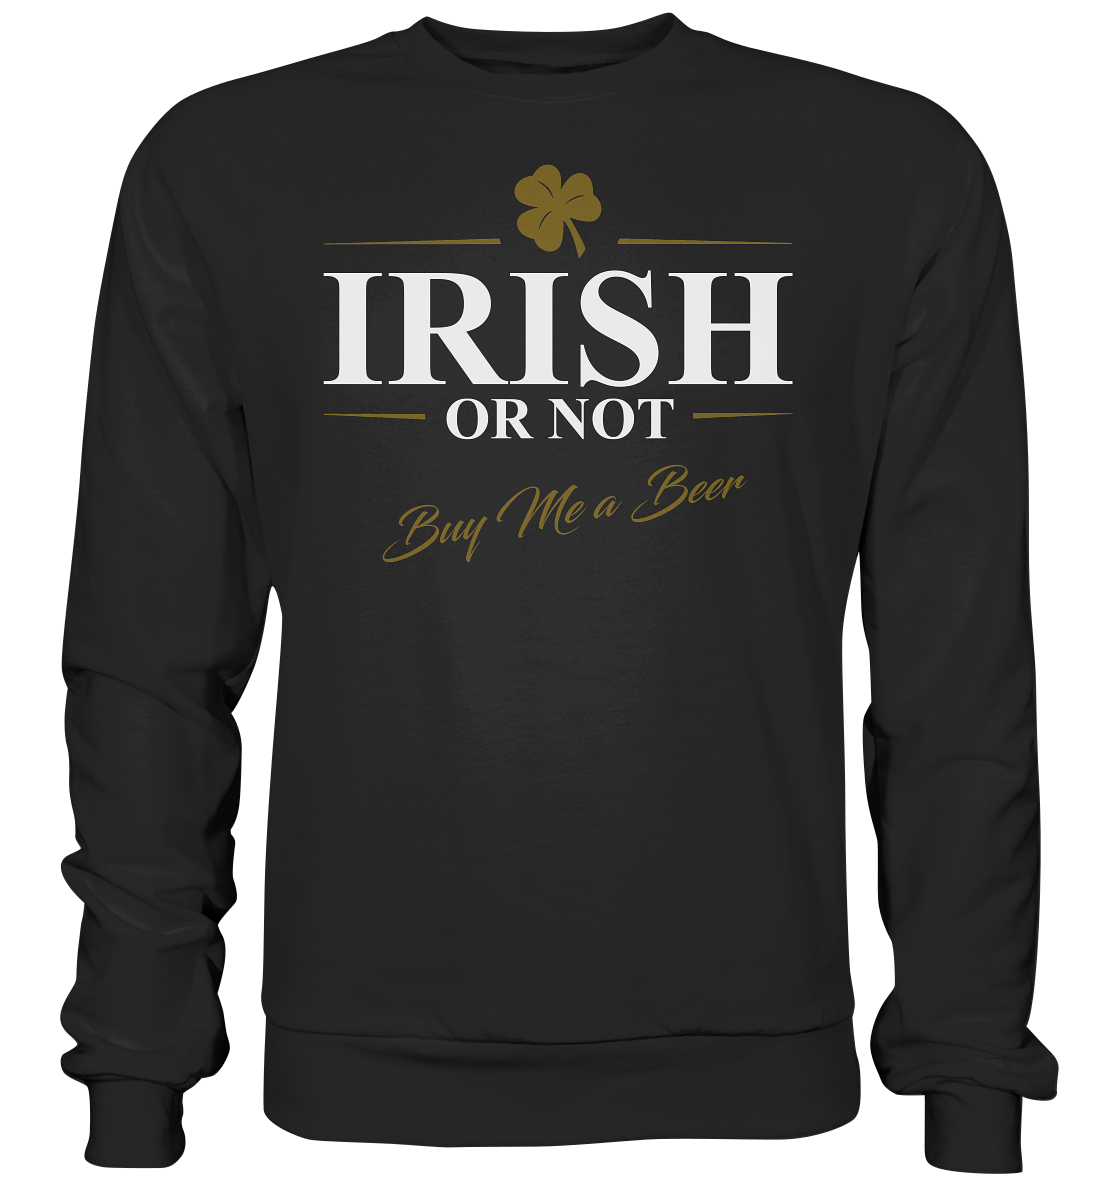 Irish Or Not "Buy Me A Beer" - Premium Sweatshirt